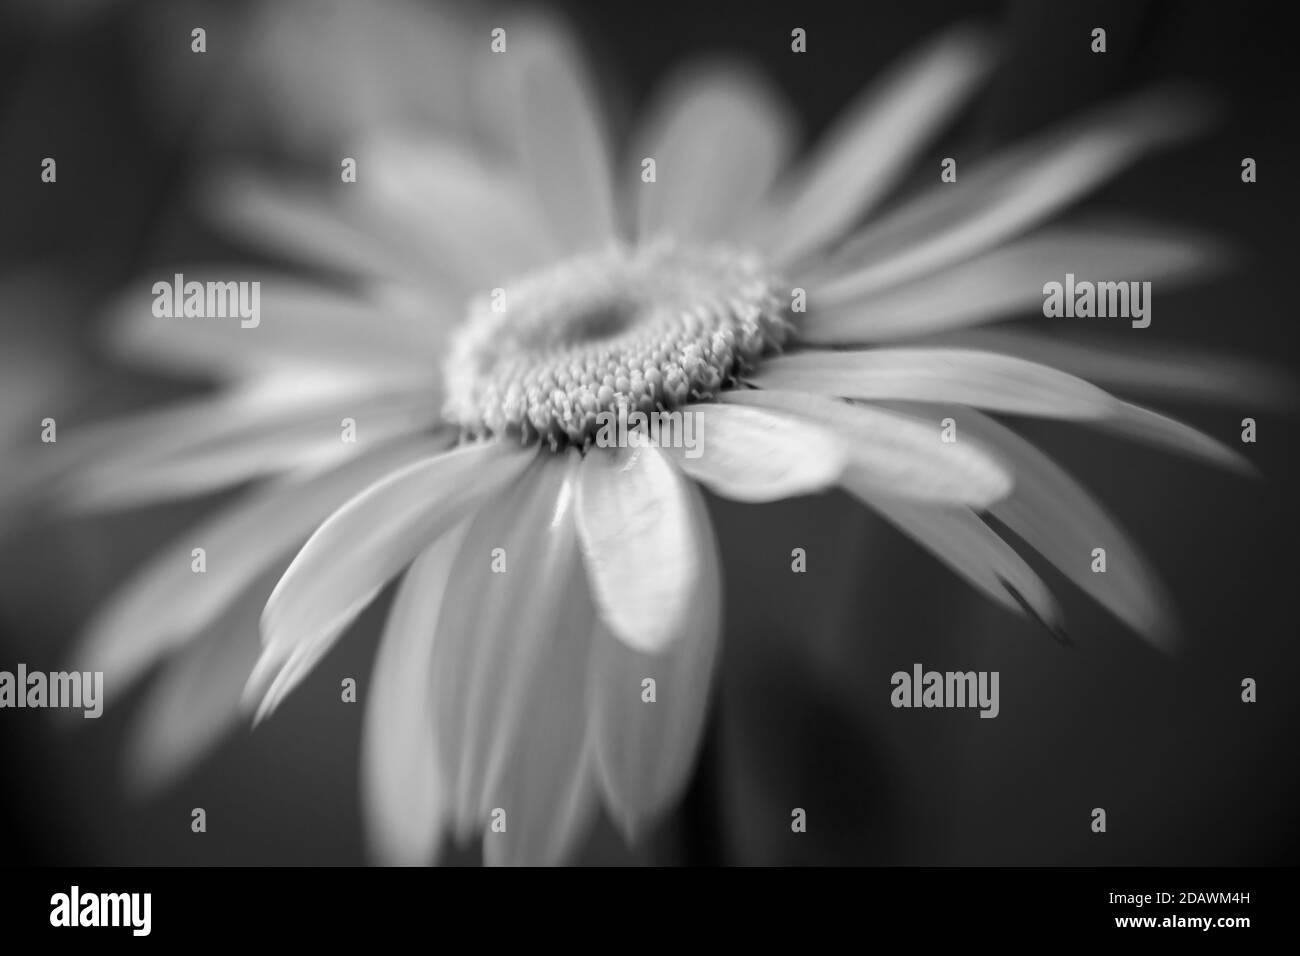 WA18067-00...WASHINGTON - imagen en blanco y negro de una Daisy Shasta en flor. Foto de stock